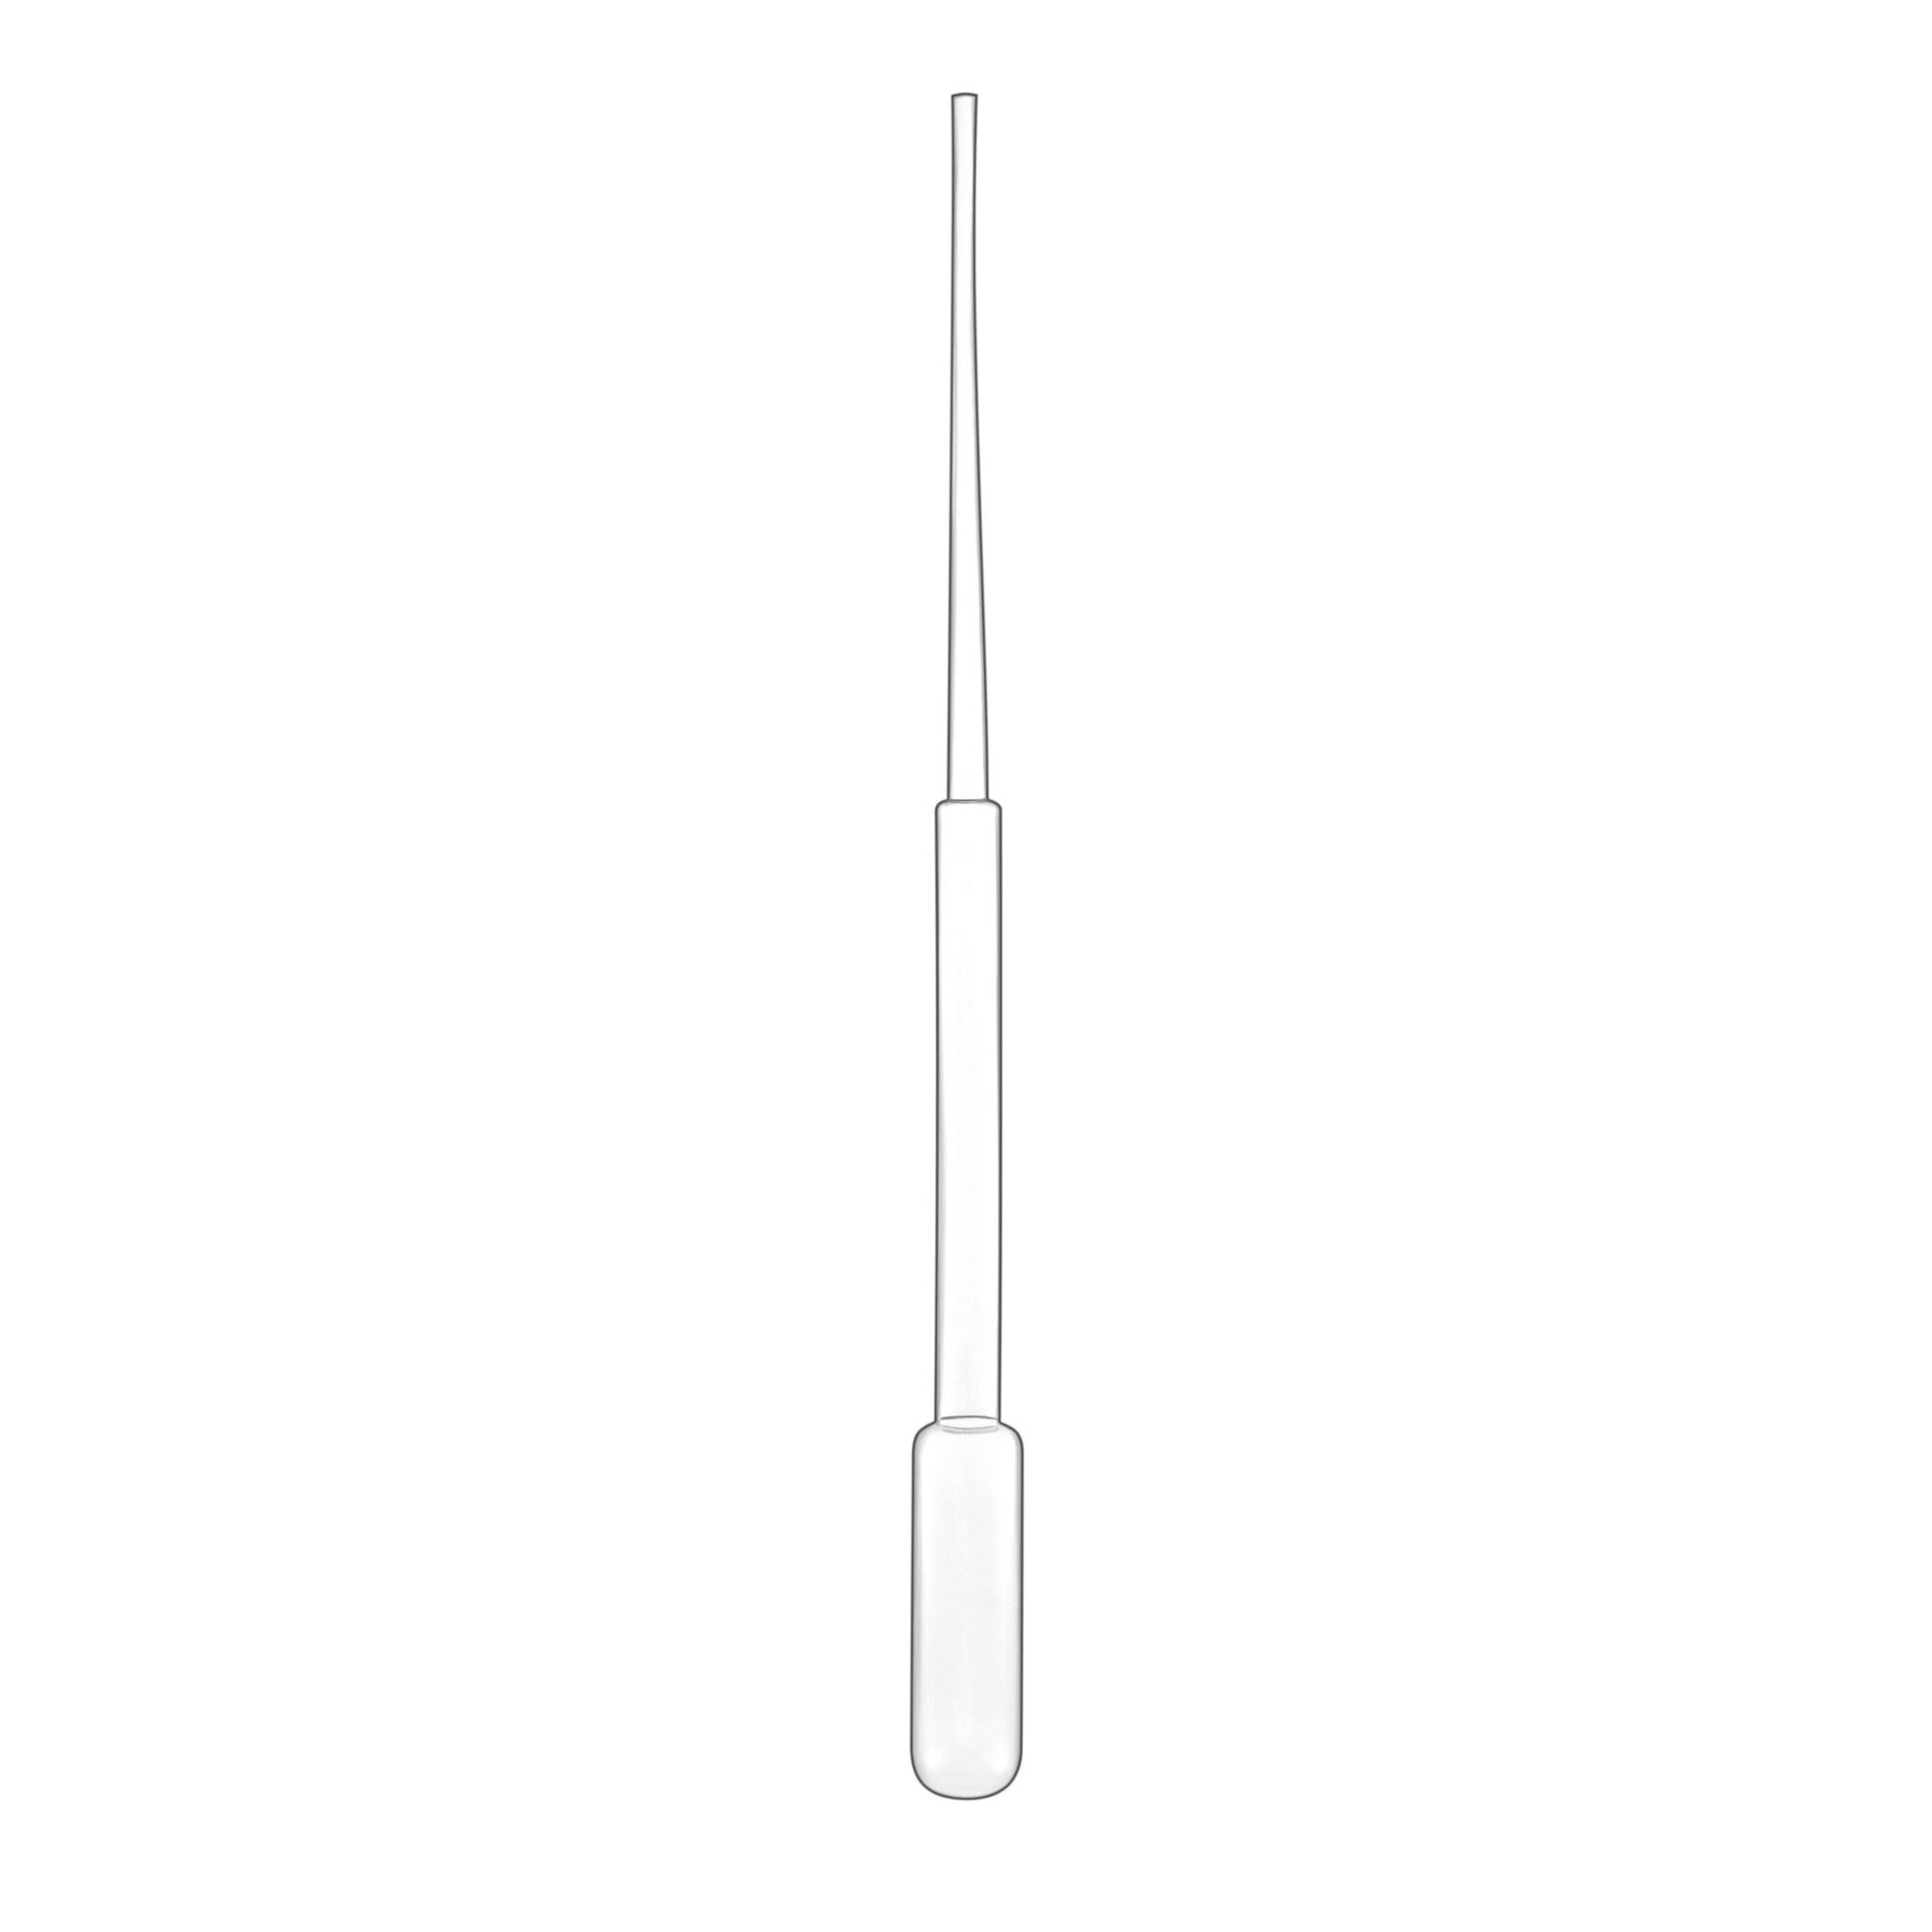 Пипетка для переноса жидкости (Пастера), 182 мм, капля 48 мкл (0,048 мл)